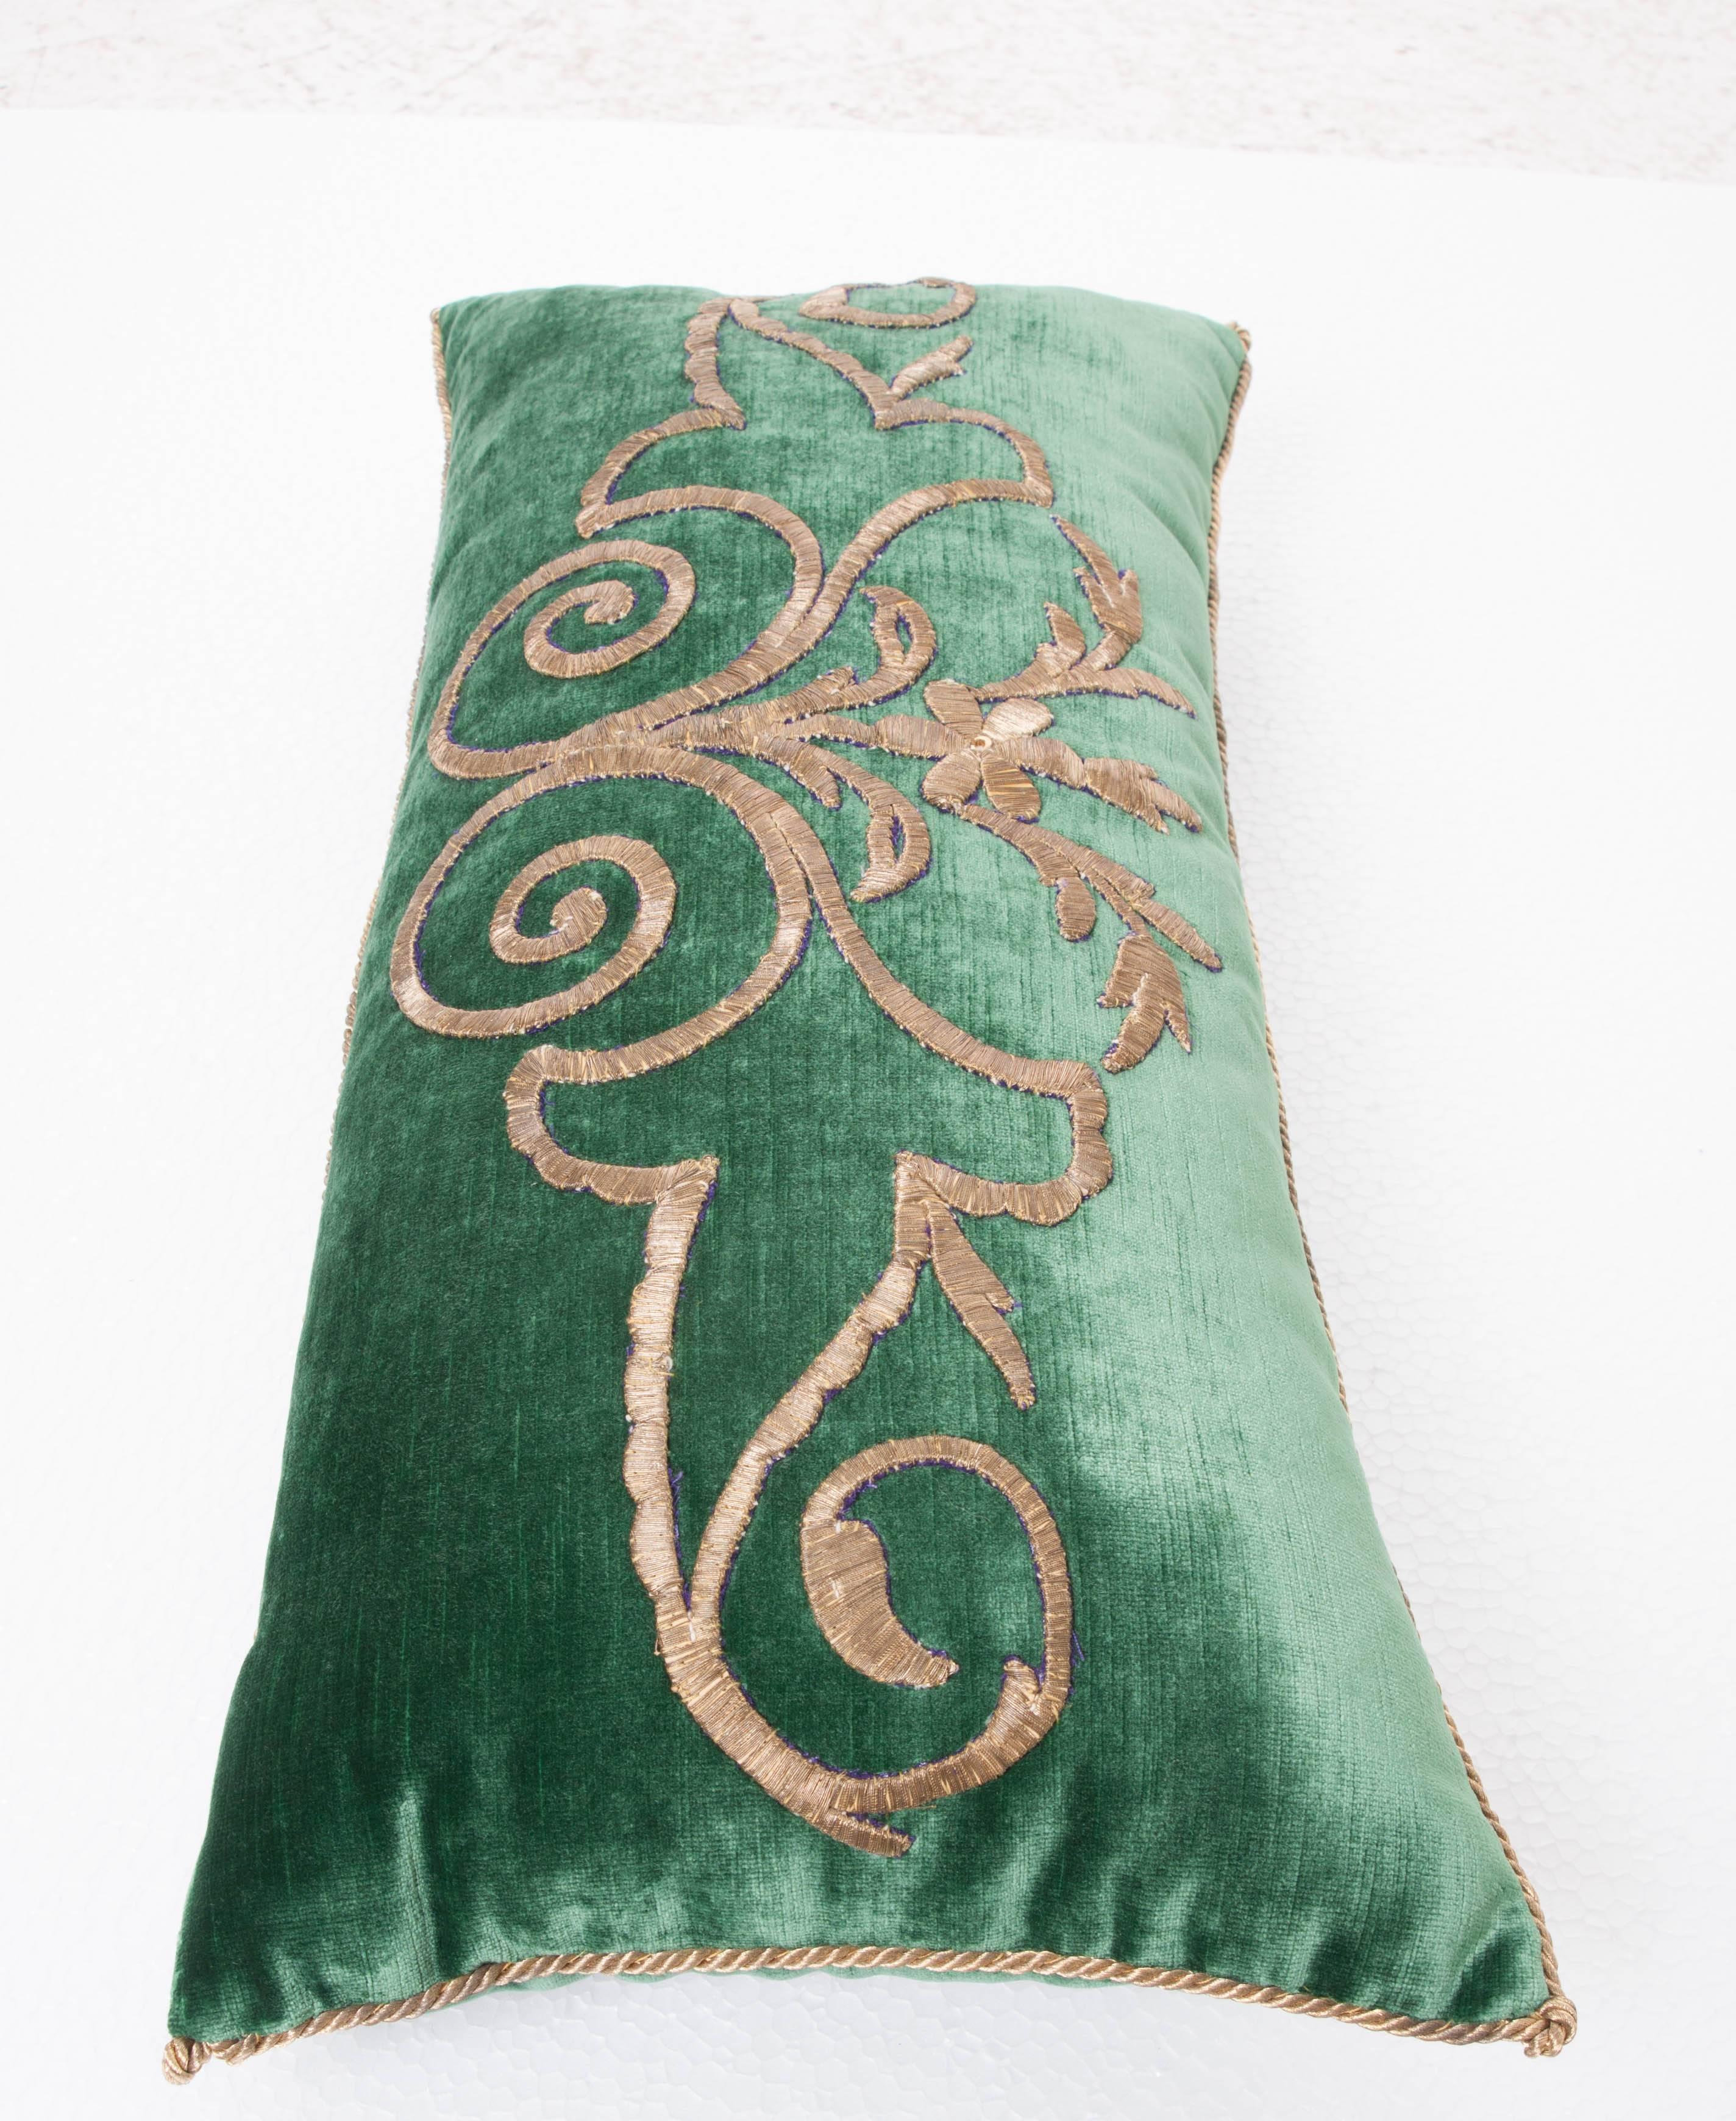 Antique Textile Pillow by B.Viz Designs 1